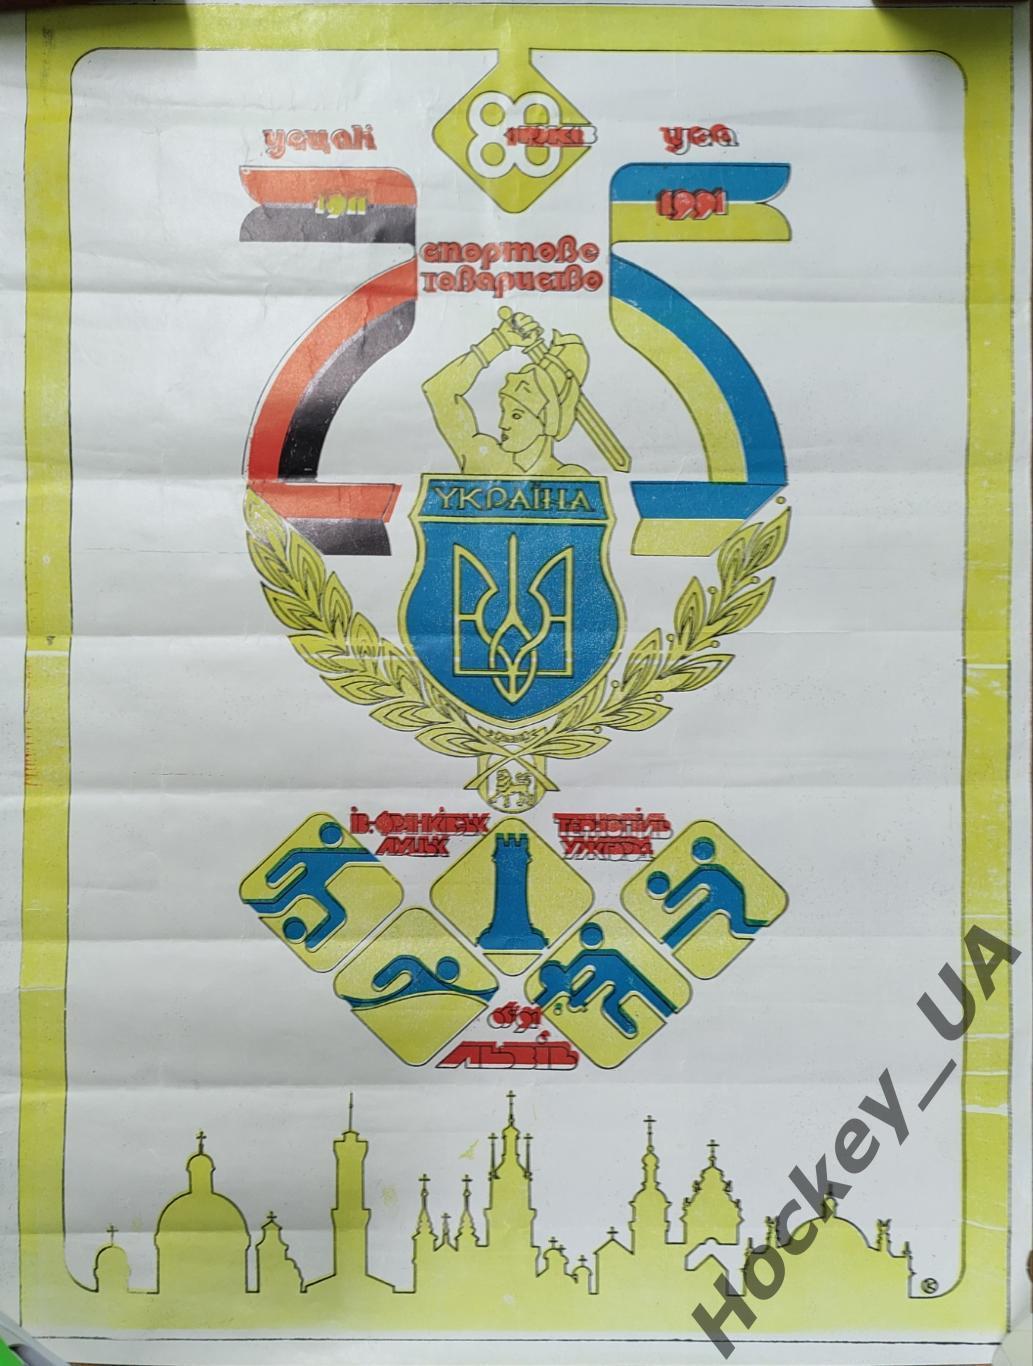 Плакат Спортове товариство «Україна» 80 років (1911-1991)